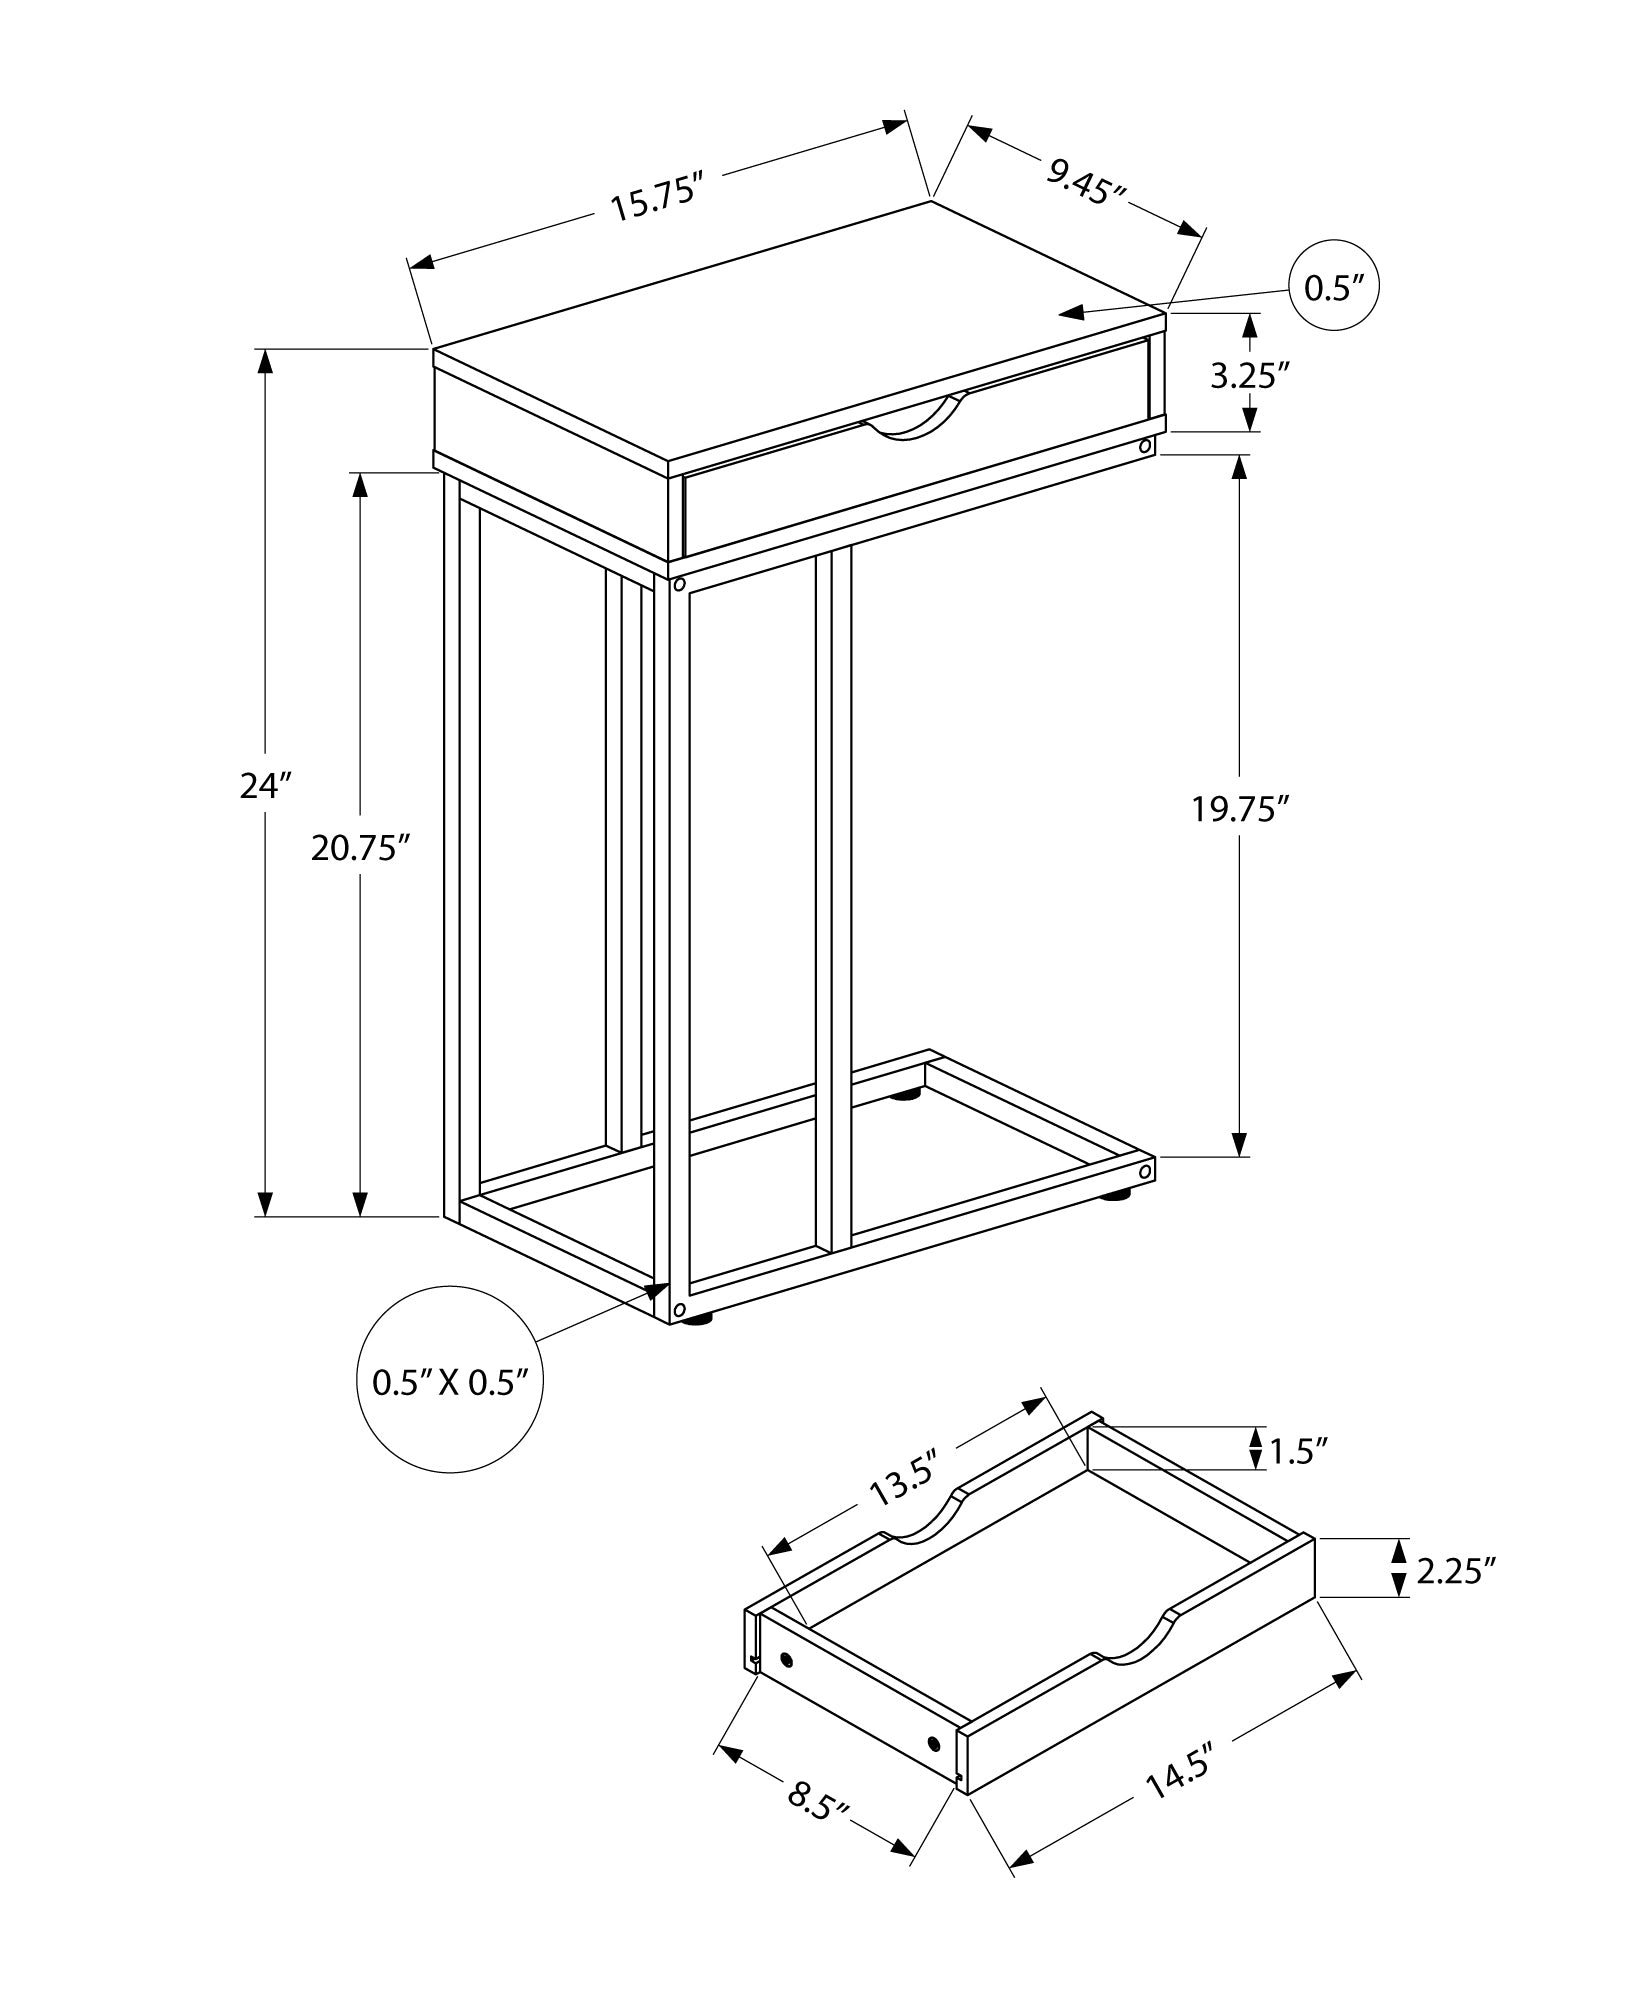 MN-473770    Side Table / C Table - 1 Storage Drawer, Pass-Through / Rectangular - 25"H - White / Black